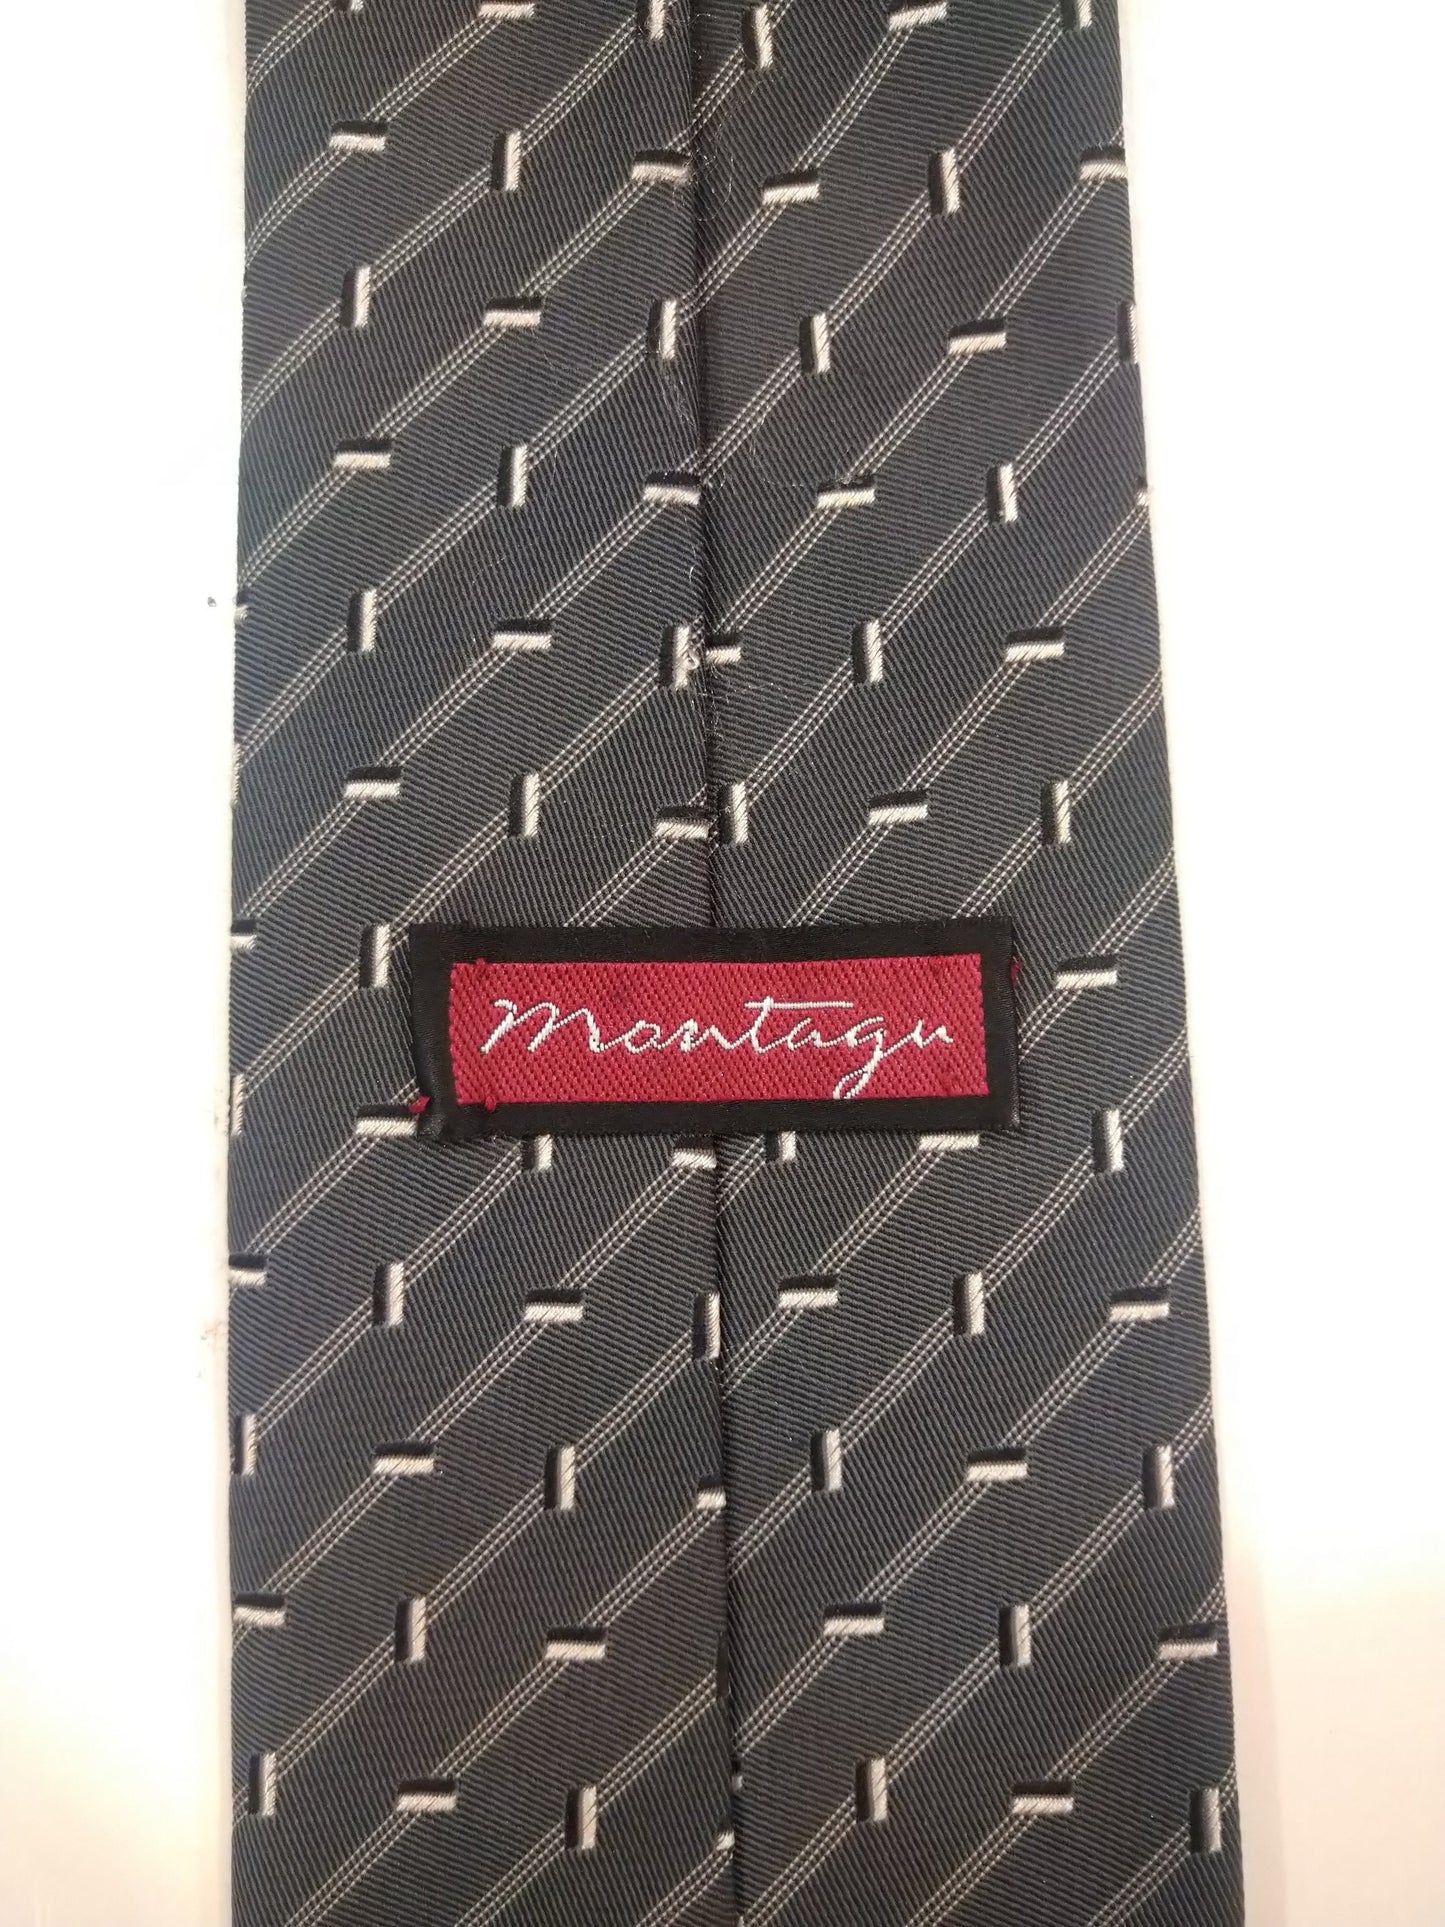 La corbata de poliéster de Montagu. Motivo blanco gris.